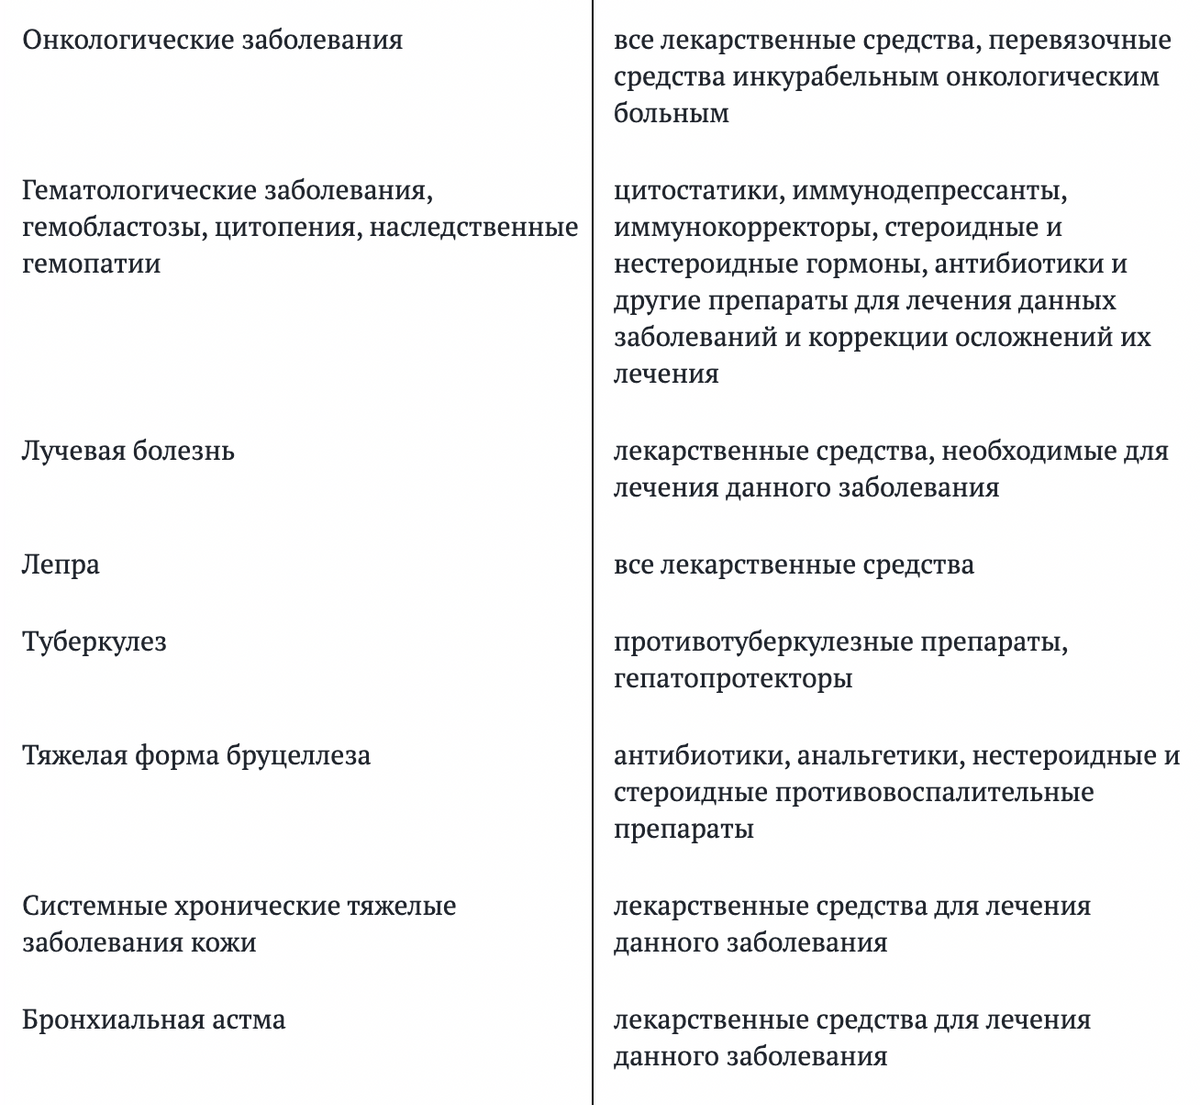 В столбике справа важное уточнение: какие именно лекарства государство готово оплачивать пациенту. Источник: iv.garant.ru